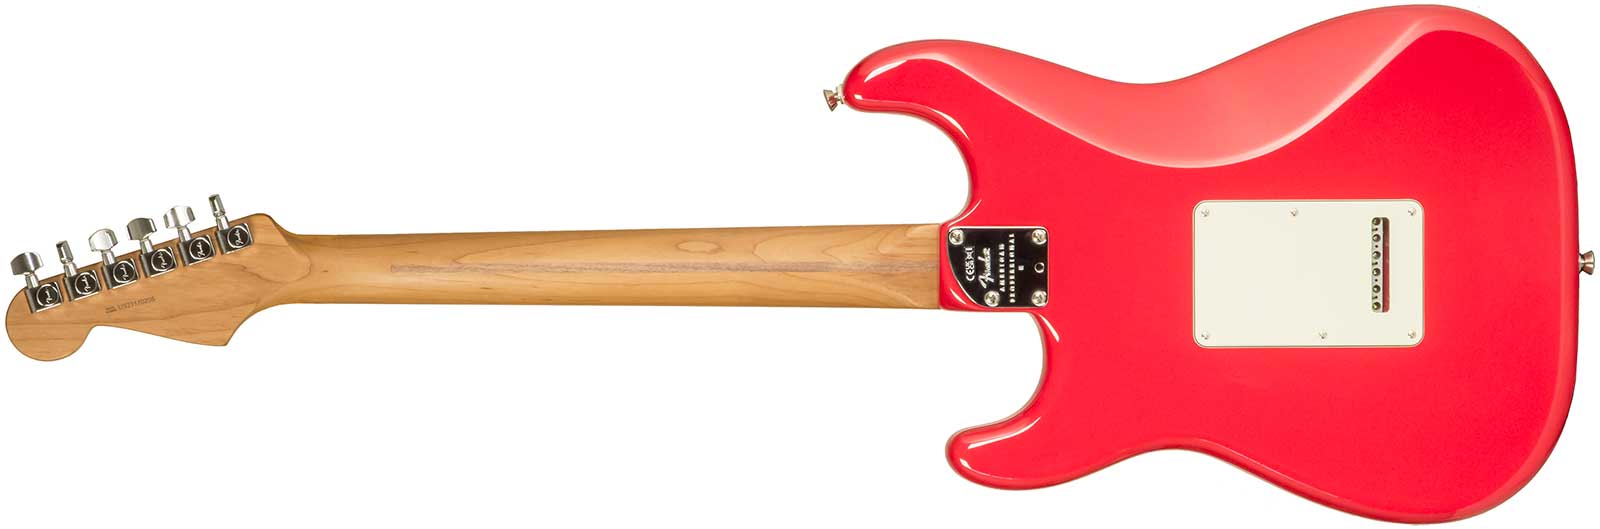 Fender Strat American Professional Ii Ltd Usa 3s Trem Rw - Fiesta Red - Elektrische gitaar in Str-vorm - Variation 4